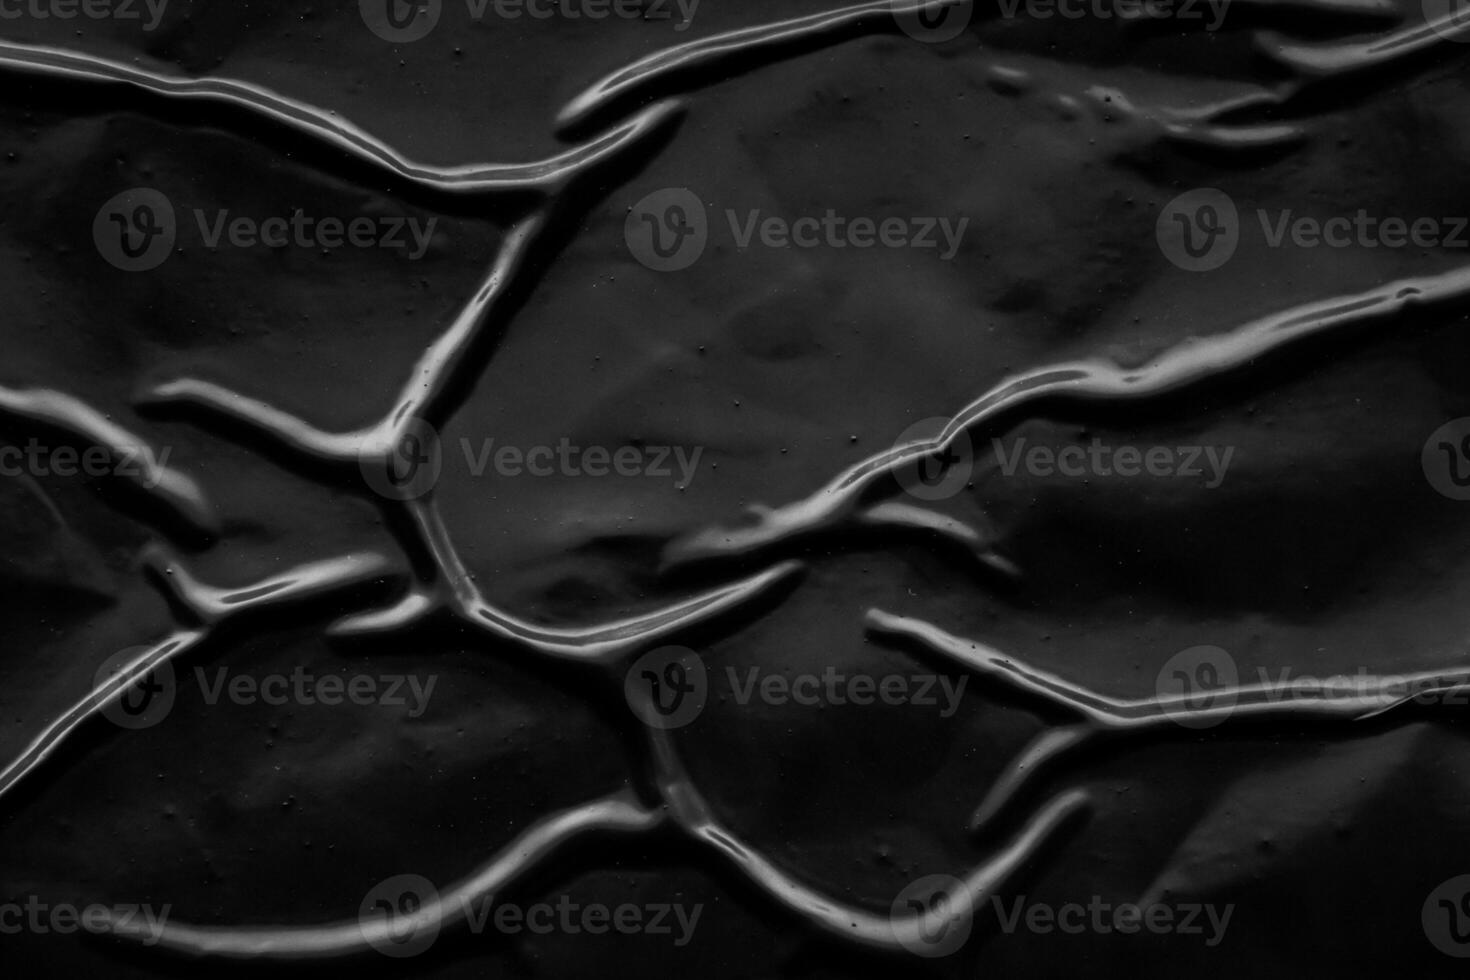 svart skrynkliga och skrynkligt plast affisch textur bakgrund foto